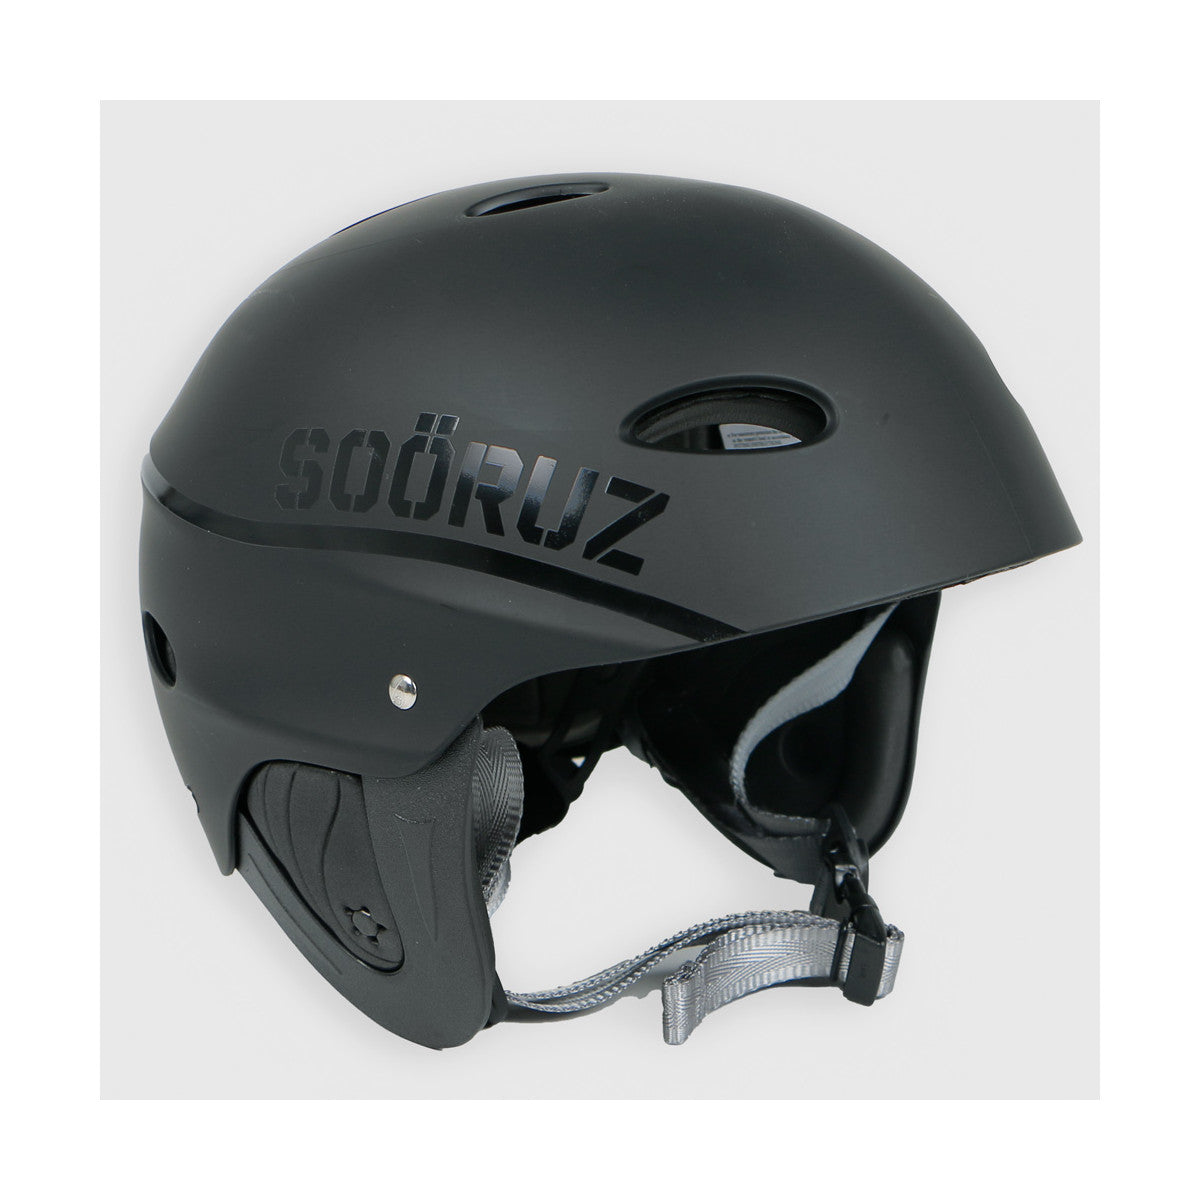 SOORUZ Helmet Ride קסדה בצבע שחור